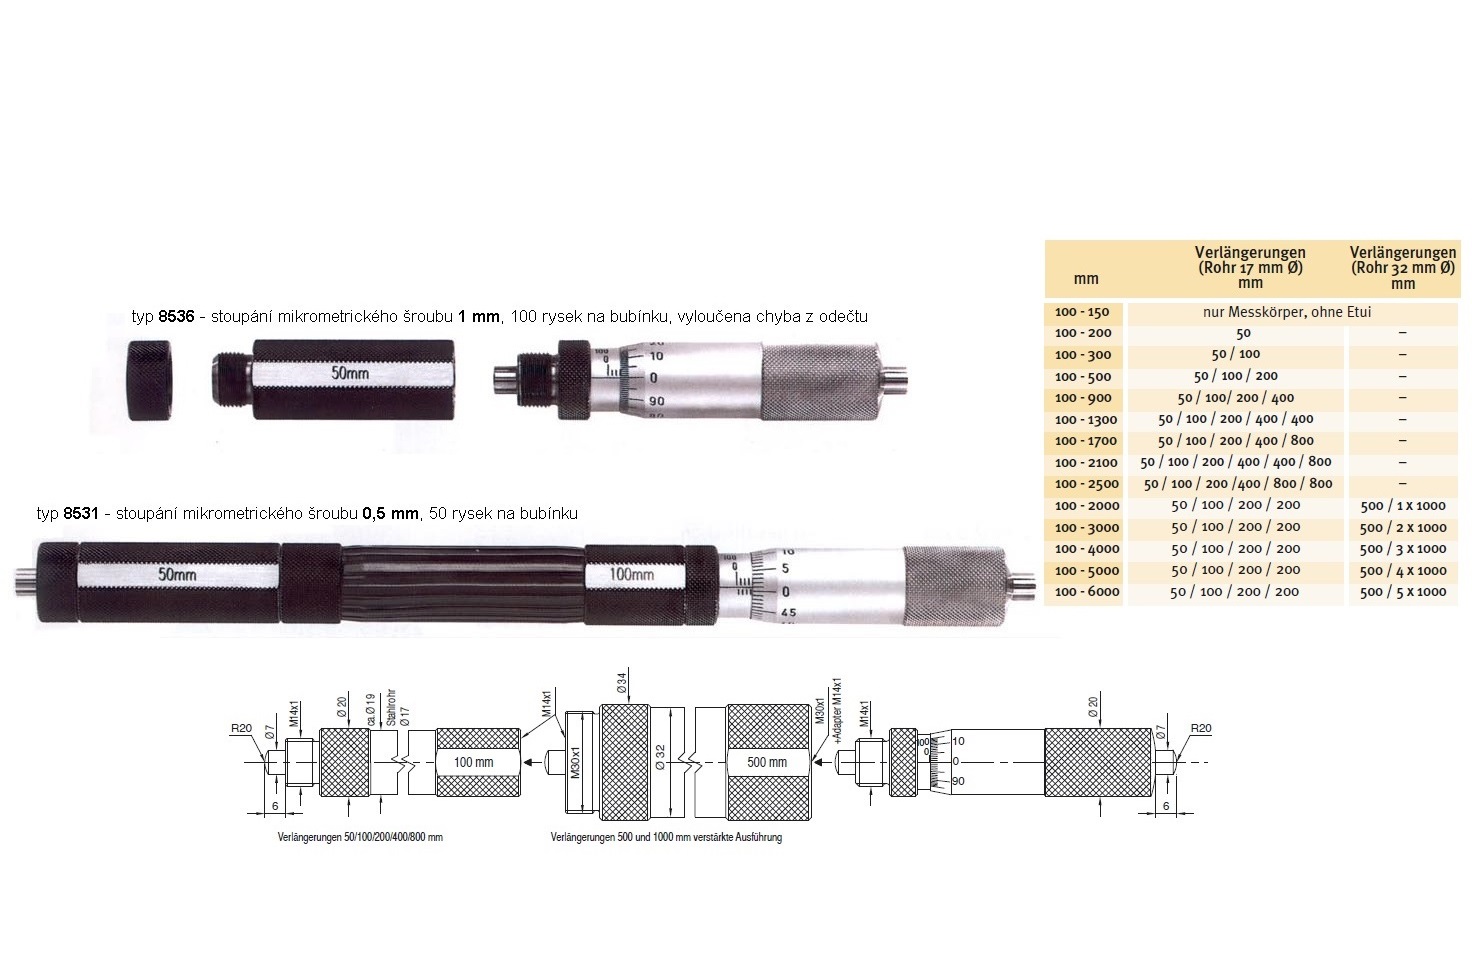 Mikrometrický odpich skládací HARTIG 100-2100 mm, stoupání šroubu 1 mm, doteky tvrdokov